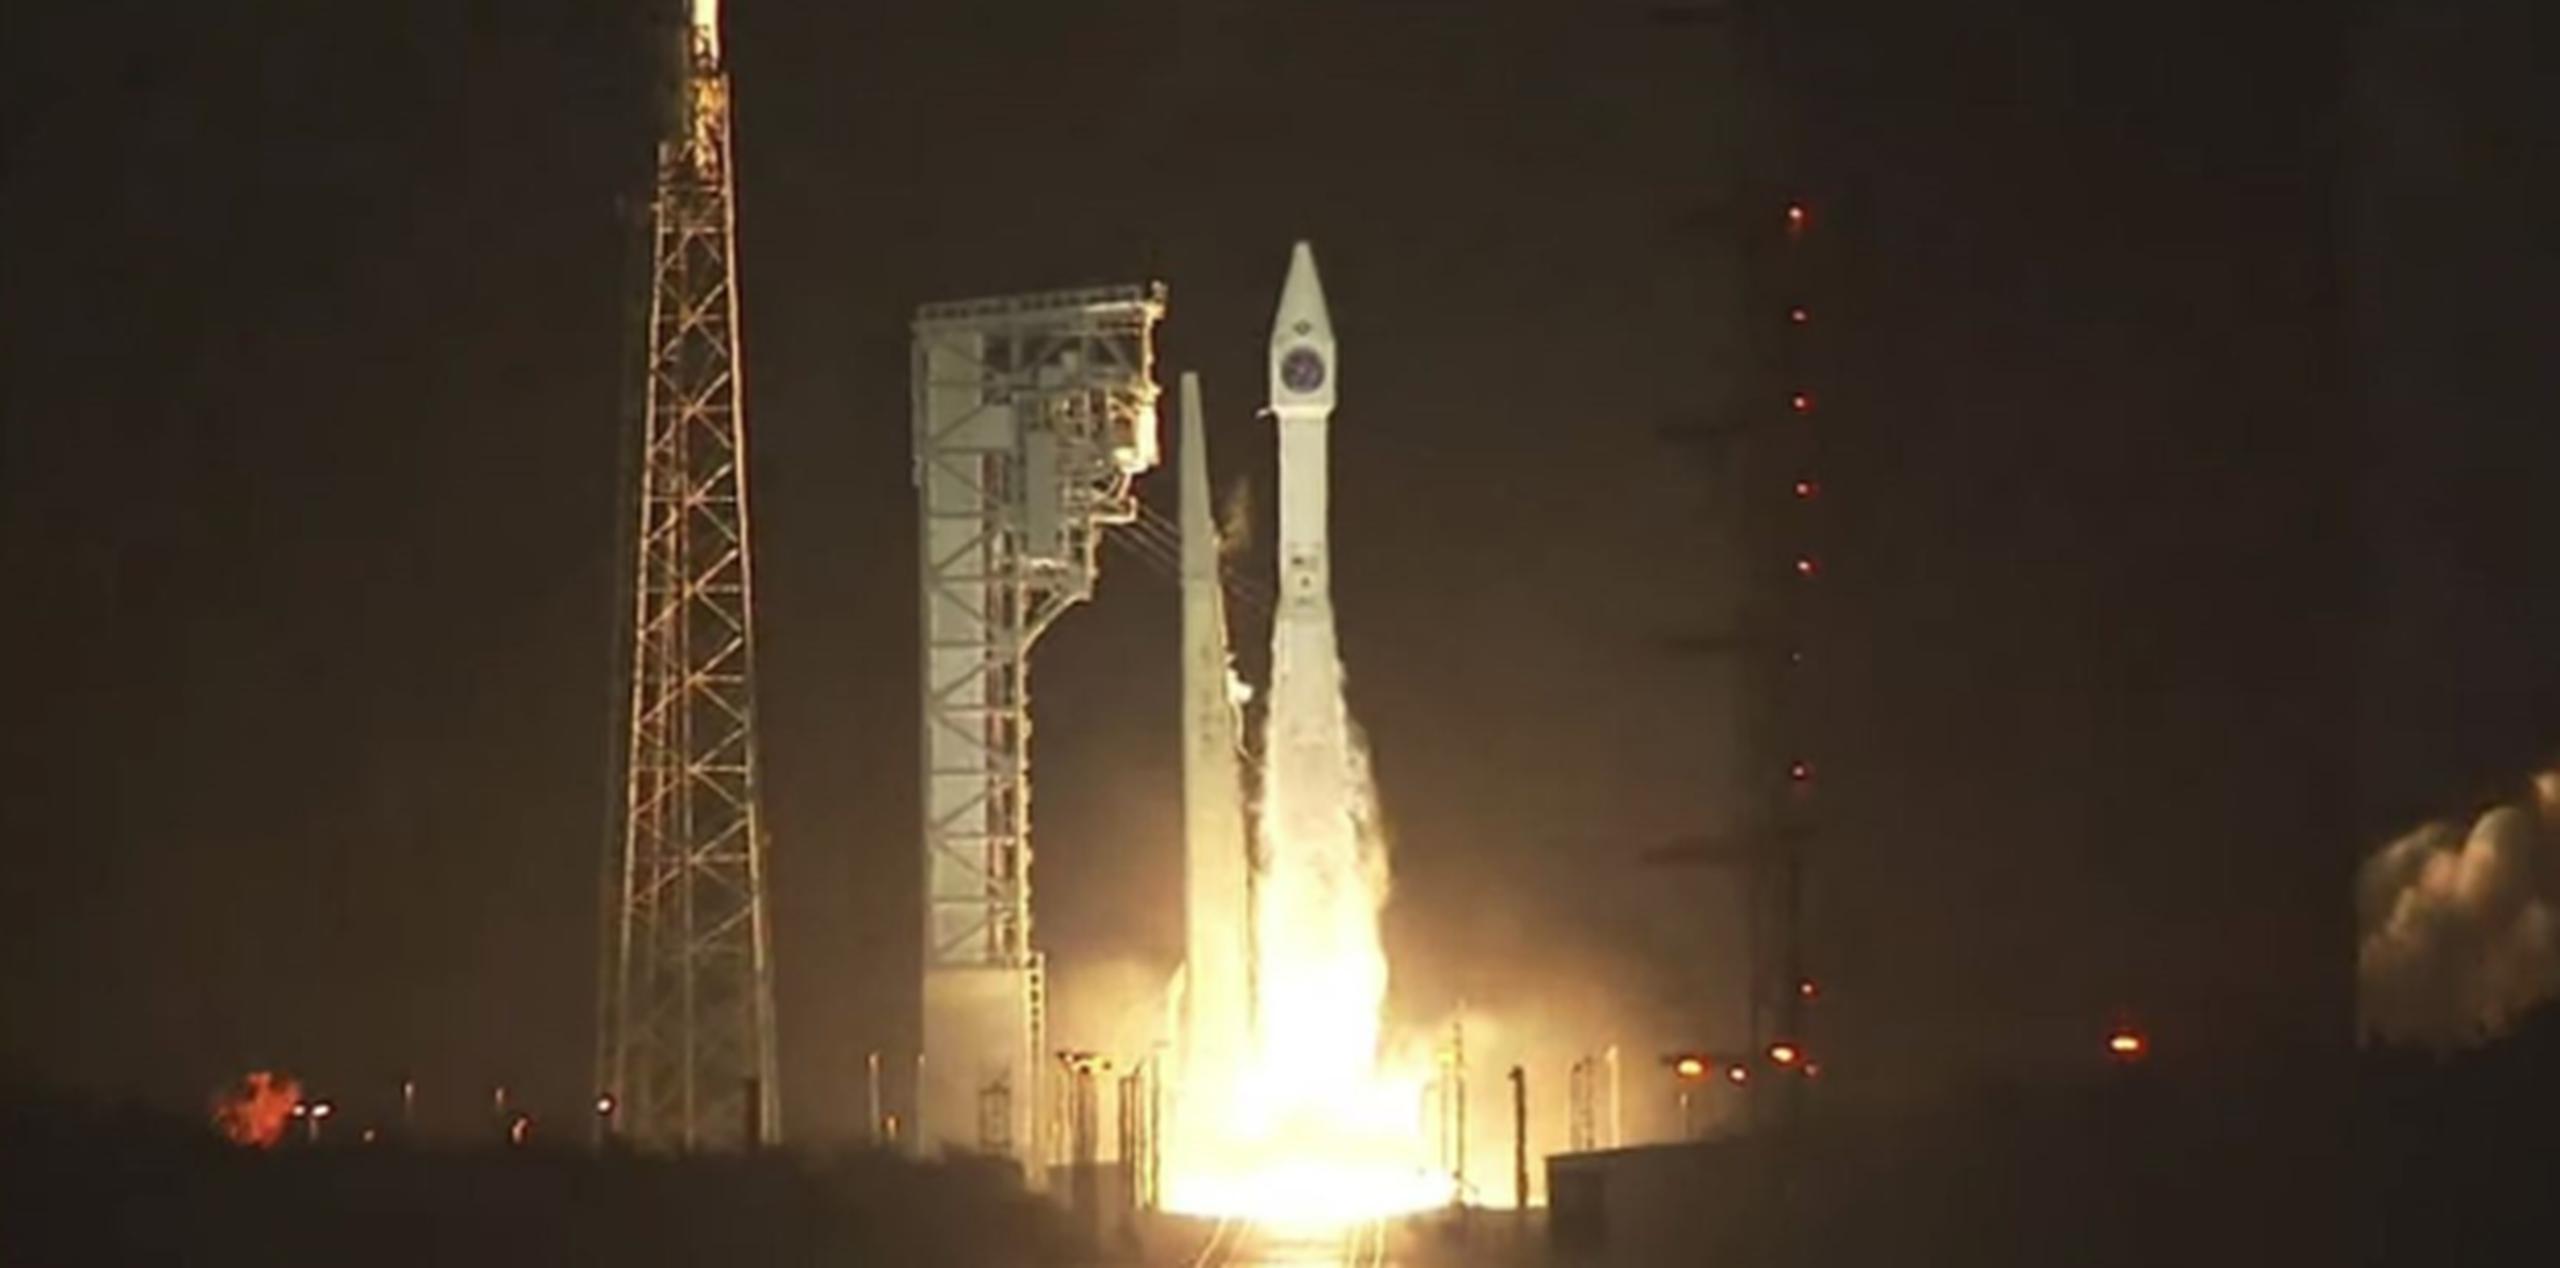 El cohete realizó todo el proceso de separación y logró dejar en órbita el satélite en poco más de 40 minutos. (Twitter / United Launch Alliance)